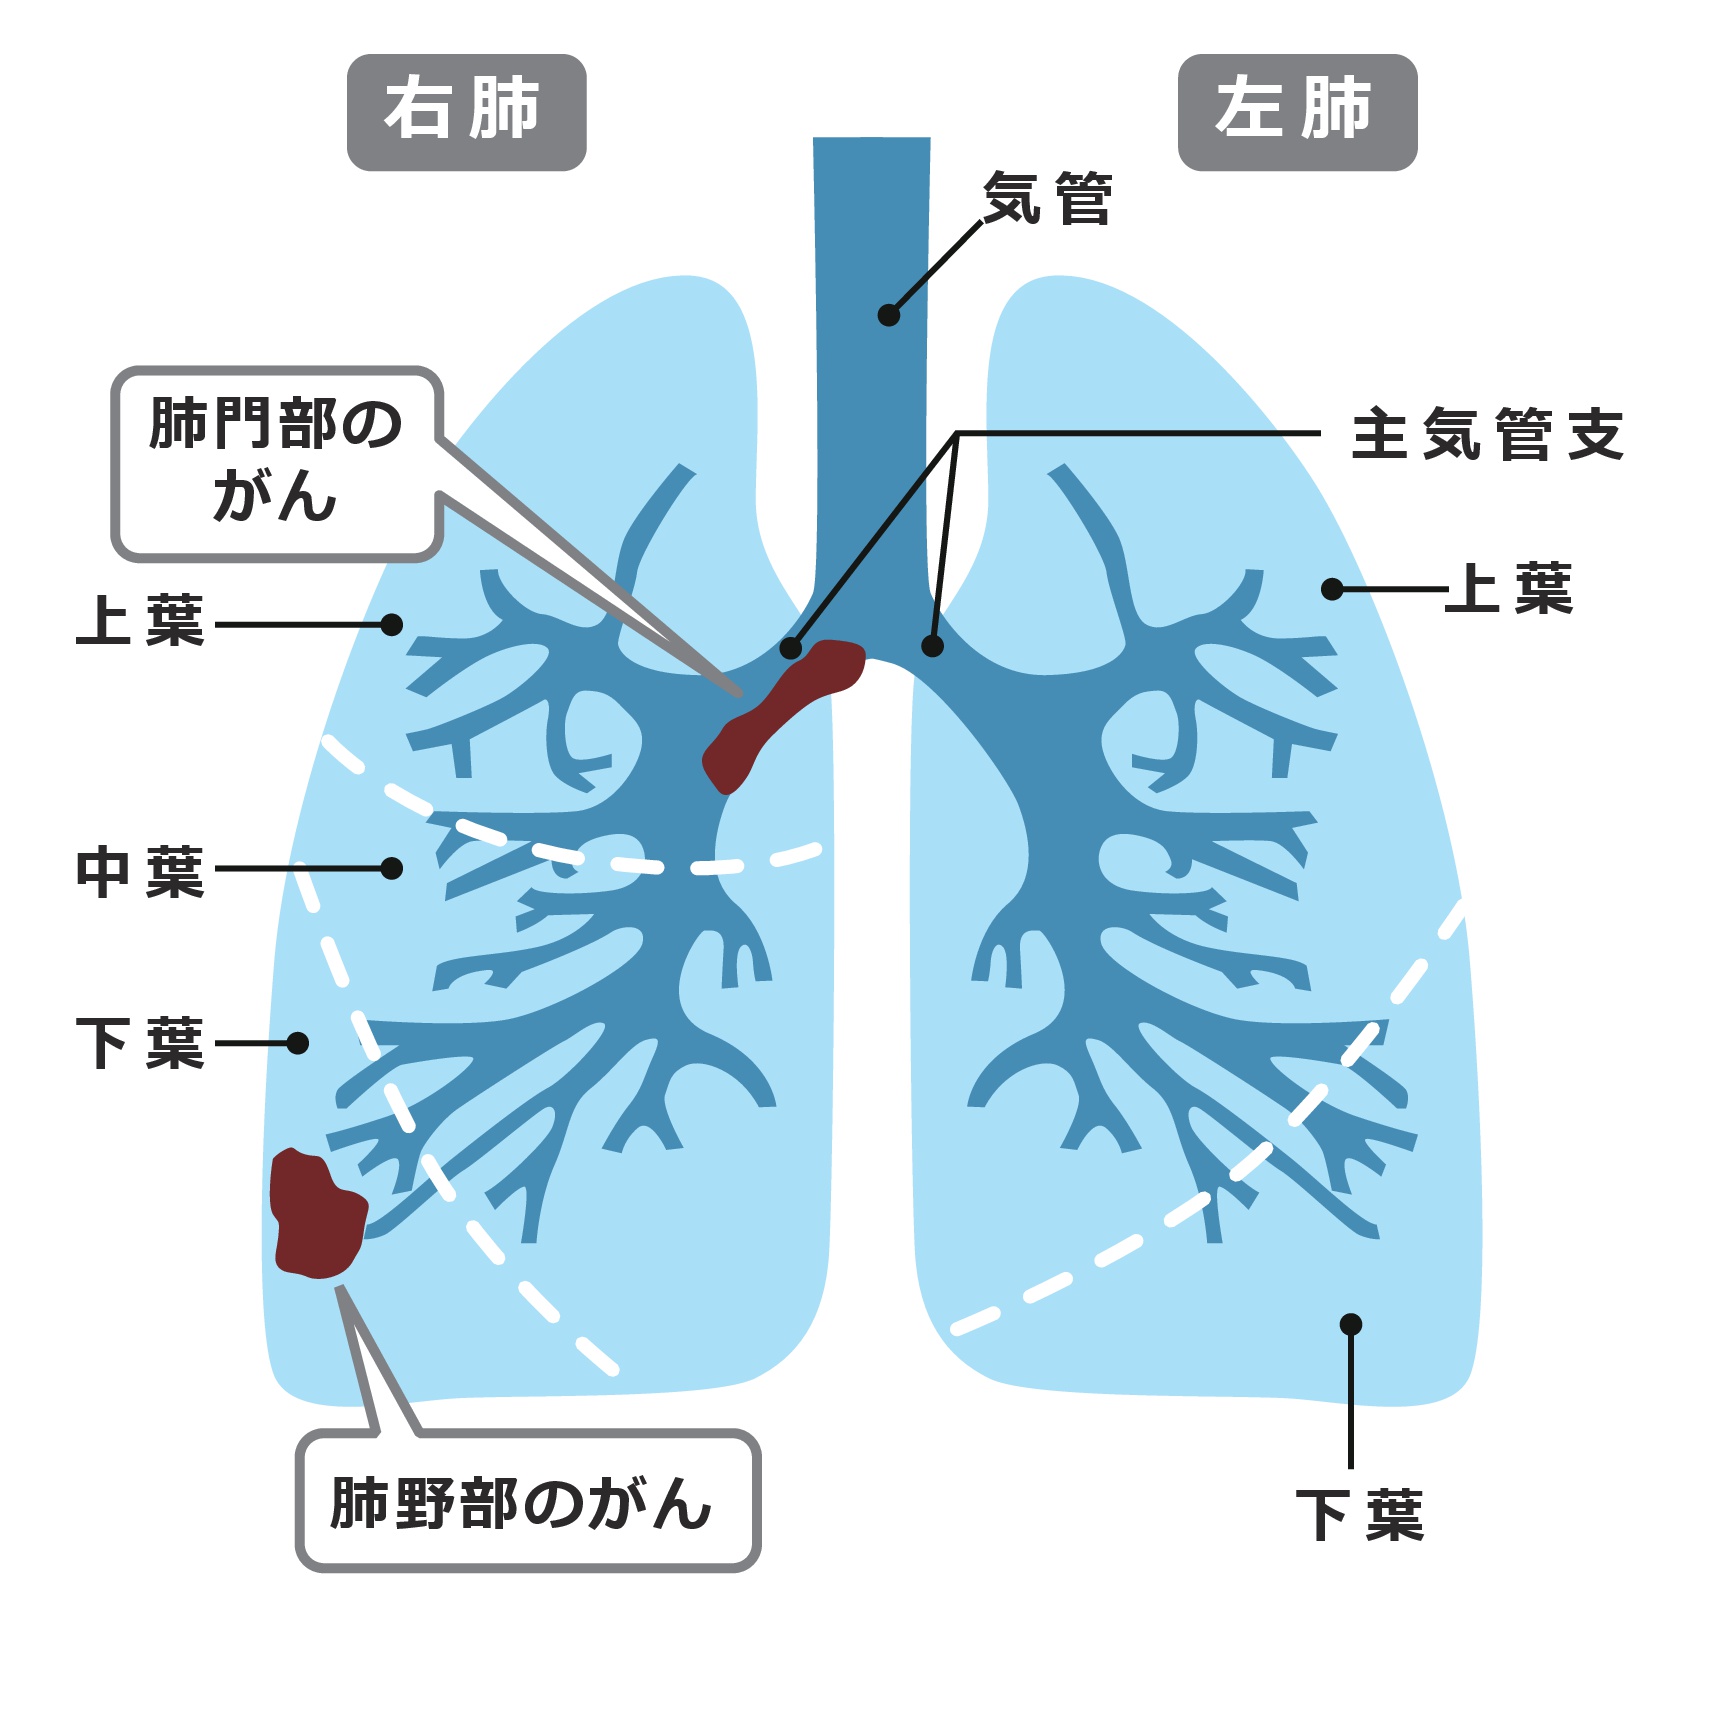 小細胞肺がんとは 疾患情報 がん情報サイト オンコロ